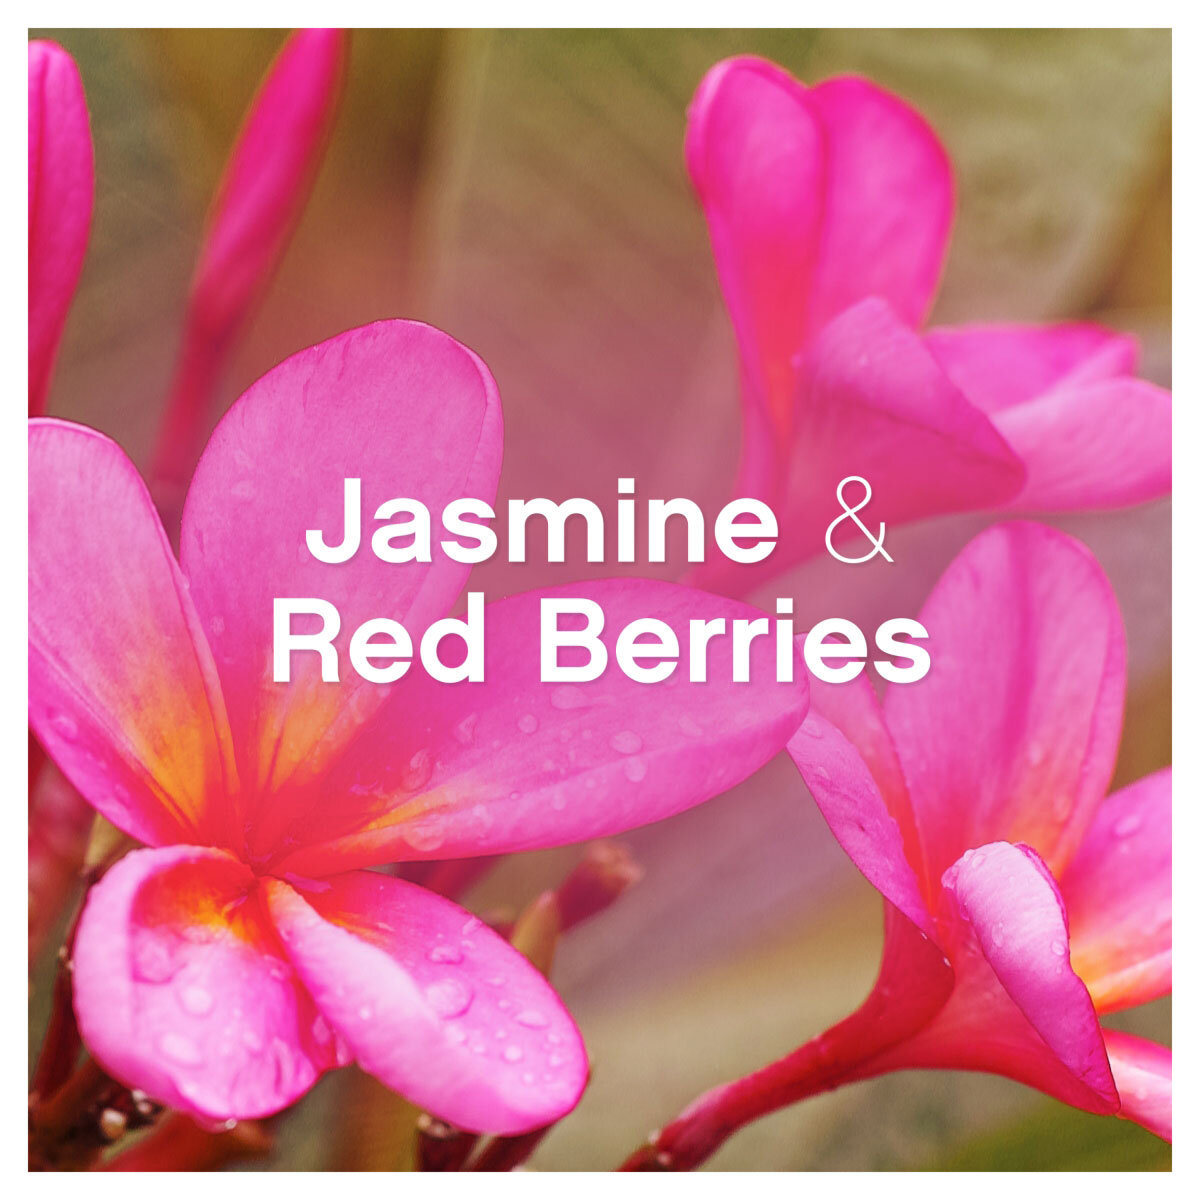 Jasmine & Red Berries Scent